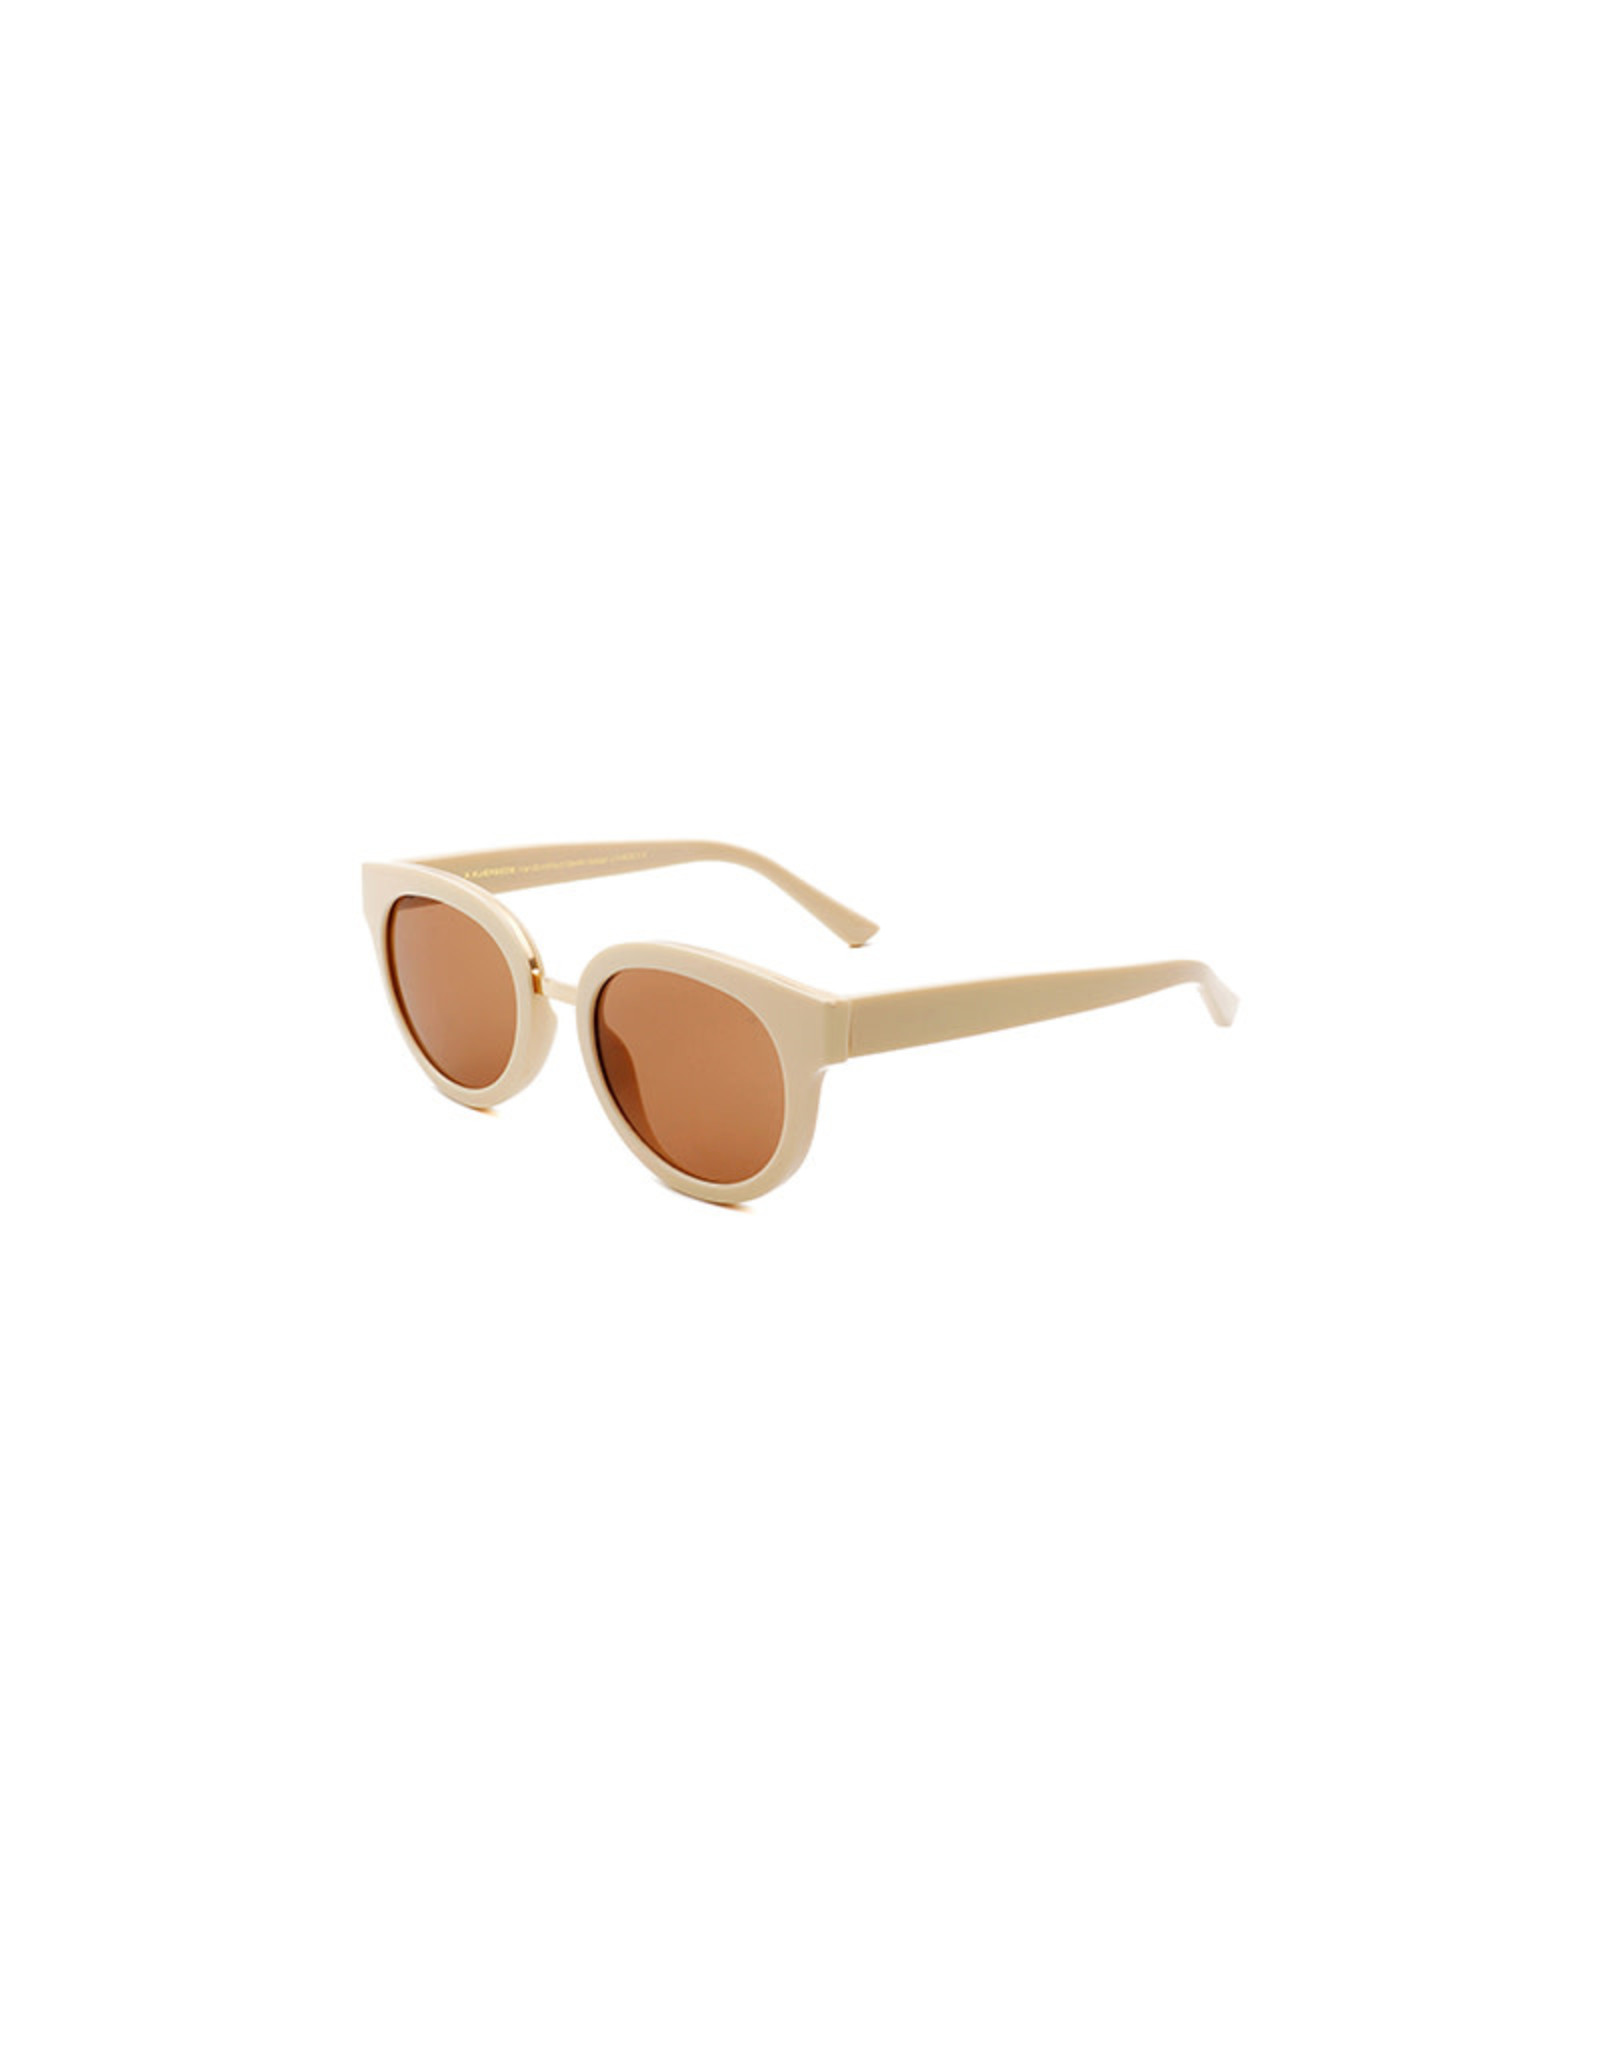 A.Kjærbede Sunglasses Jolie | Cream